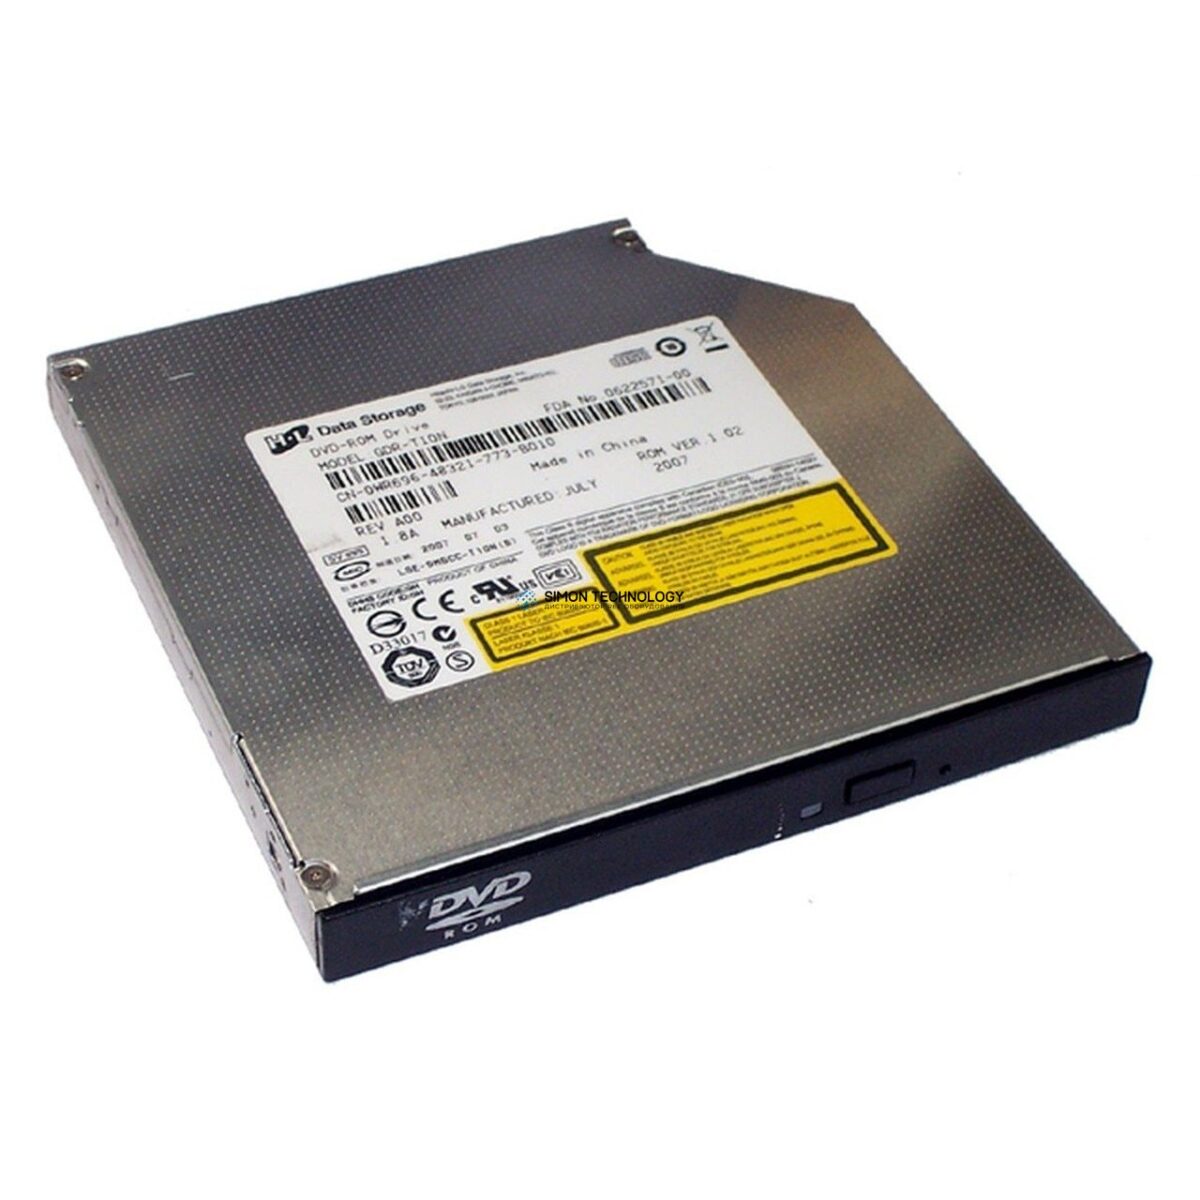 Dell DELL POWEREDGE DVD-ROM DRIVE IDE SLIMLINE (GDR-T10N)